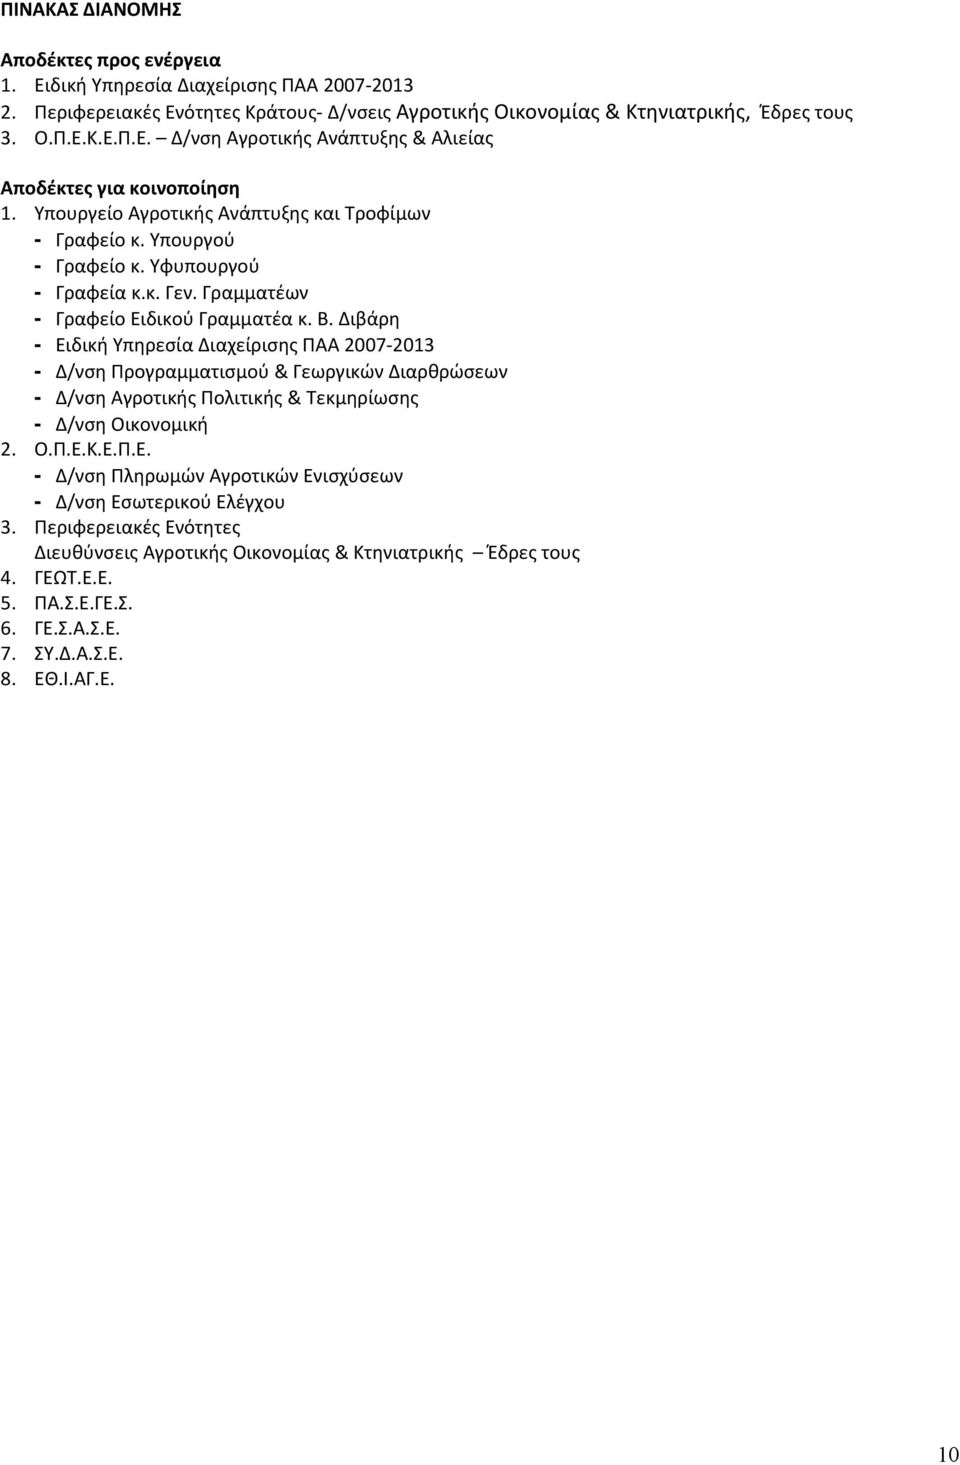 Διβάρη - Ειδική Υπηρεσία Διαχείρισης ΠΑΑ 2007 2013 - Δ/νση Προγραμματισμού & Γεωργικών Διαρθρώσεων - Δ/νση Αγροτικής Πολιτικής & Τεκμηρίωσης - Δ/νση Οικονομική 2. Ο.Π.Ε.Κ.Ε.Π.Ε. - Δ/νση Πληρωμών Αγροτικών Ενισχύσεων - Δ/νση Εσωτερικού Ελέγχου 3.